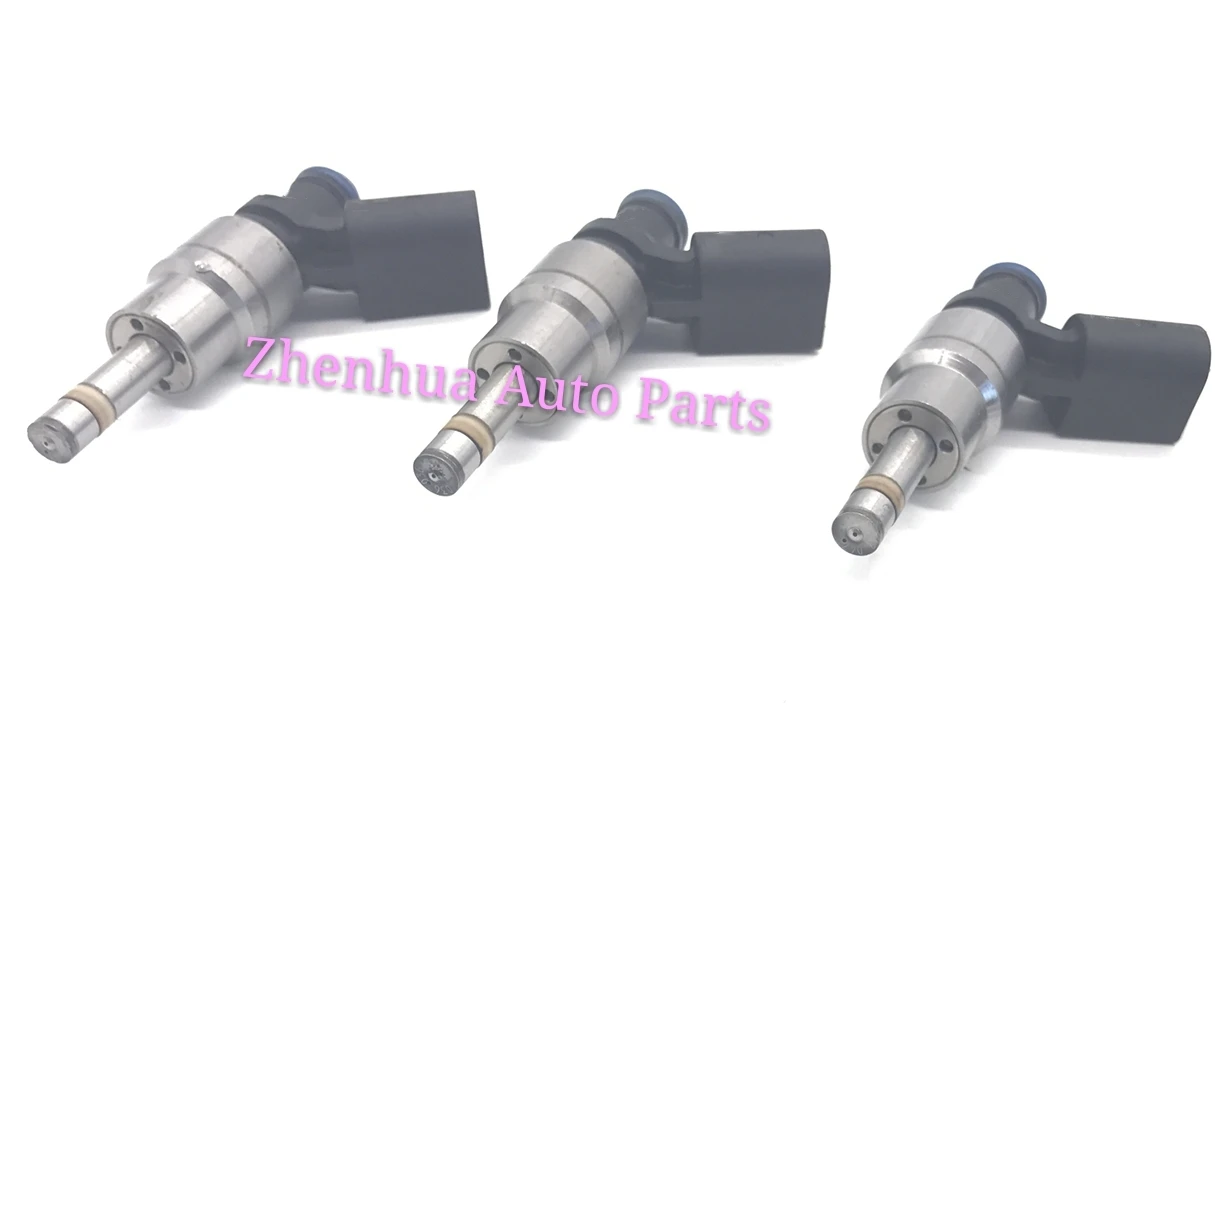 

4pcs New Fuel Injectors Nozzle For Audi- A3 A4 TT VW- Passat- Jetta- GT I EOS 2.0L L4 OEM:06F906036A 06F 906 036A